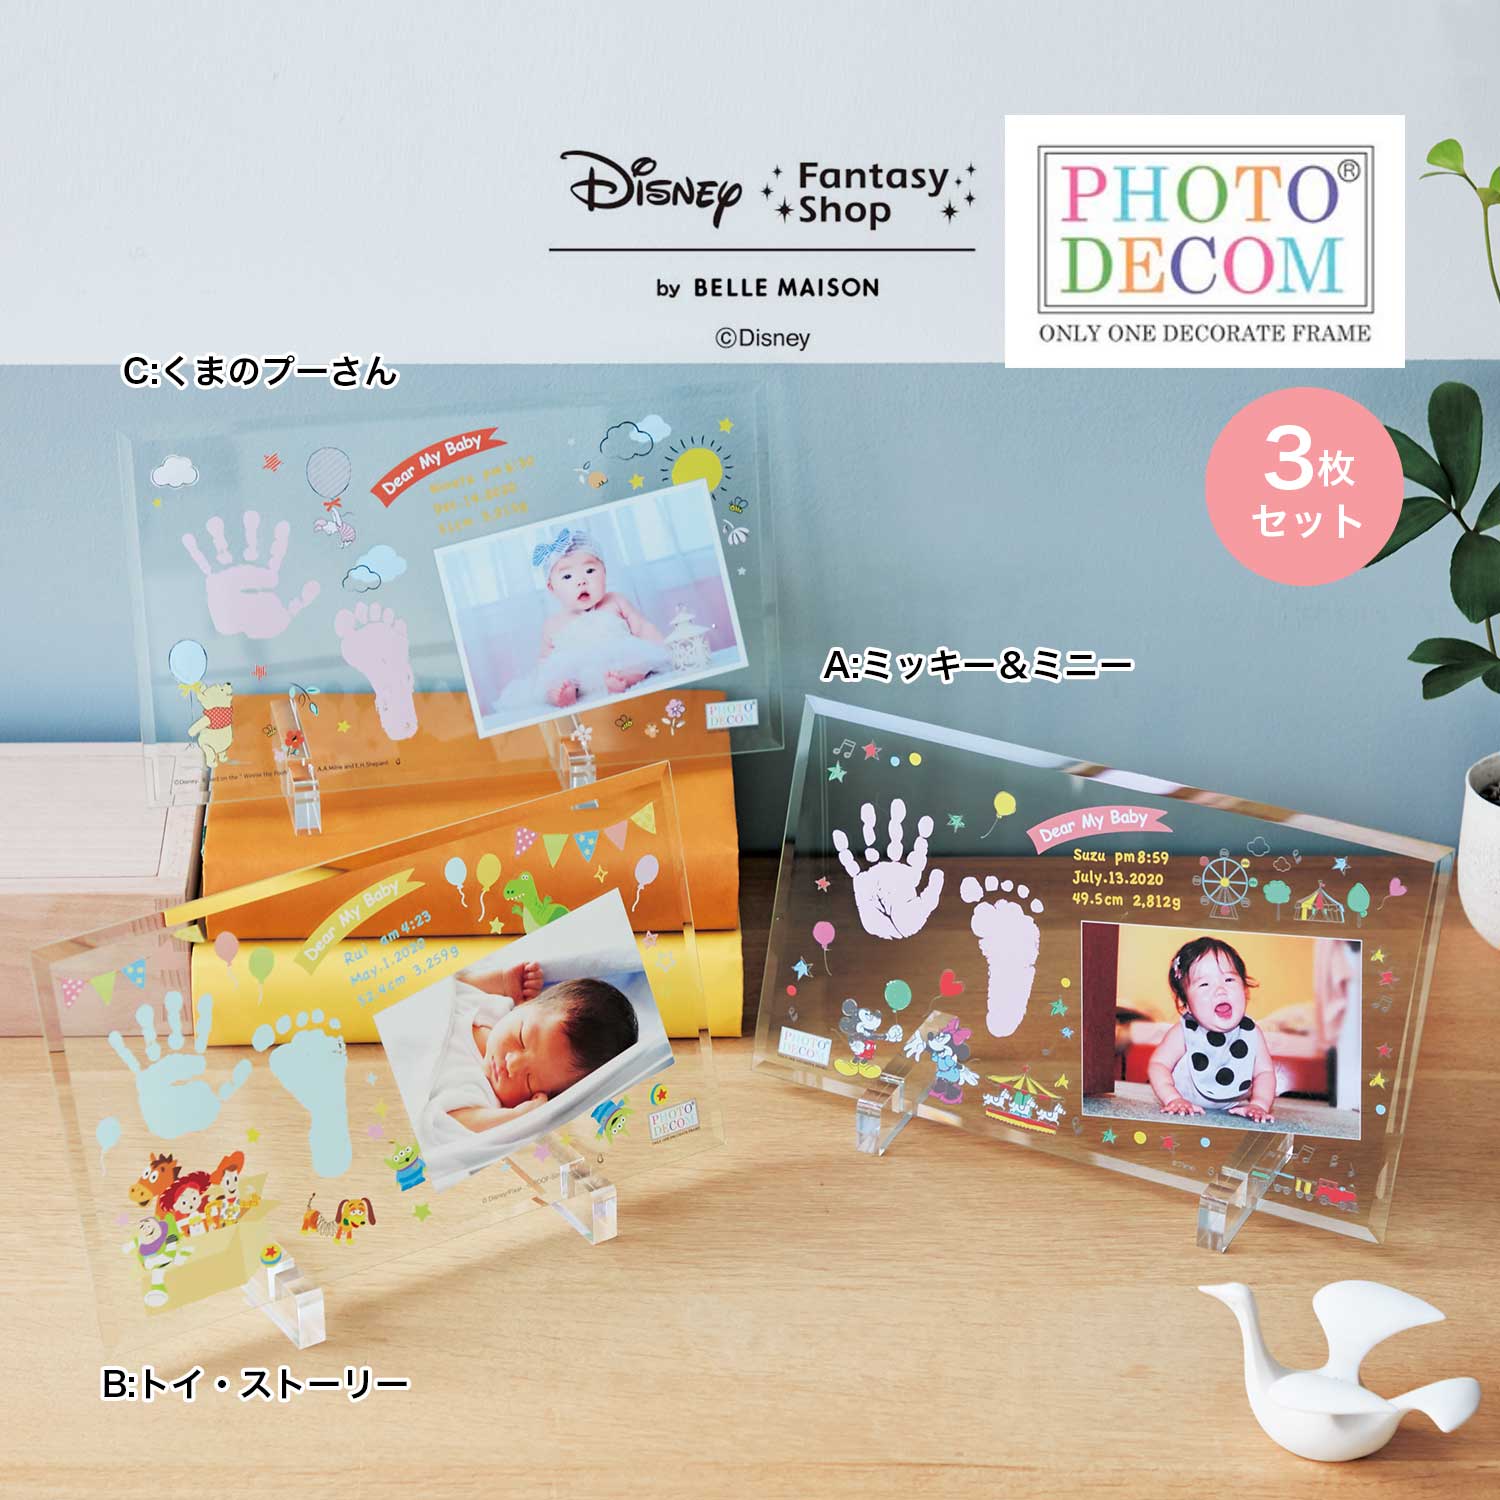 【ディズニー/Disney】【送料無料】 ディズニー フォトデコム・クリアガラス手形足形メモリアルお仕立券3枚セット